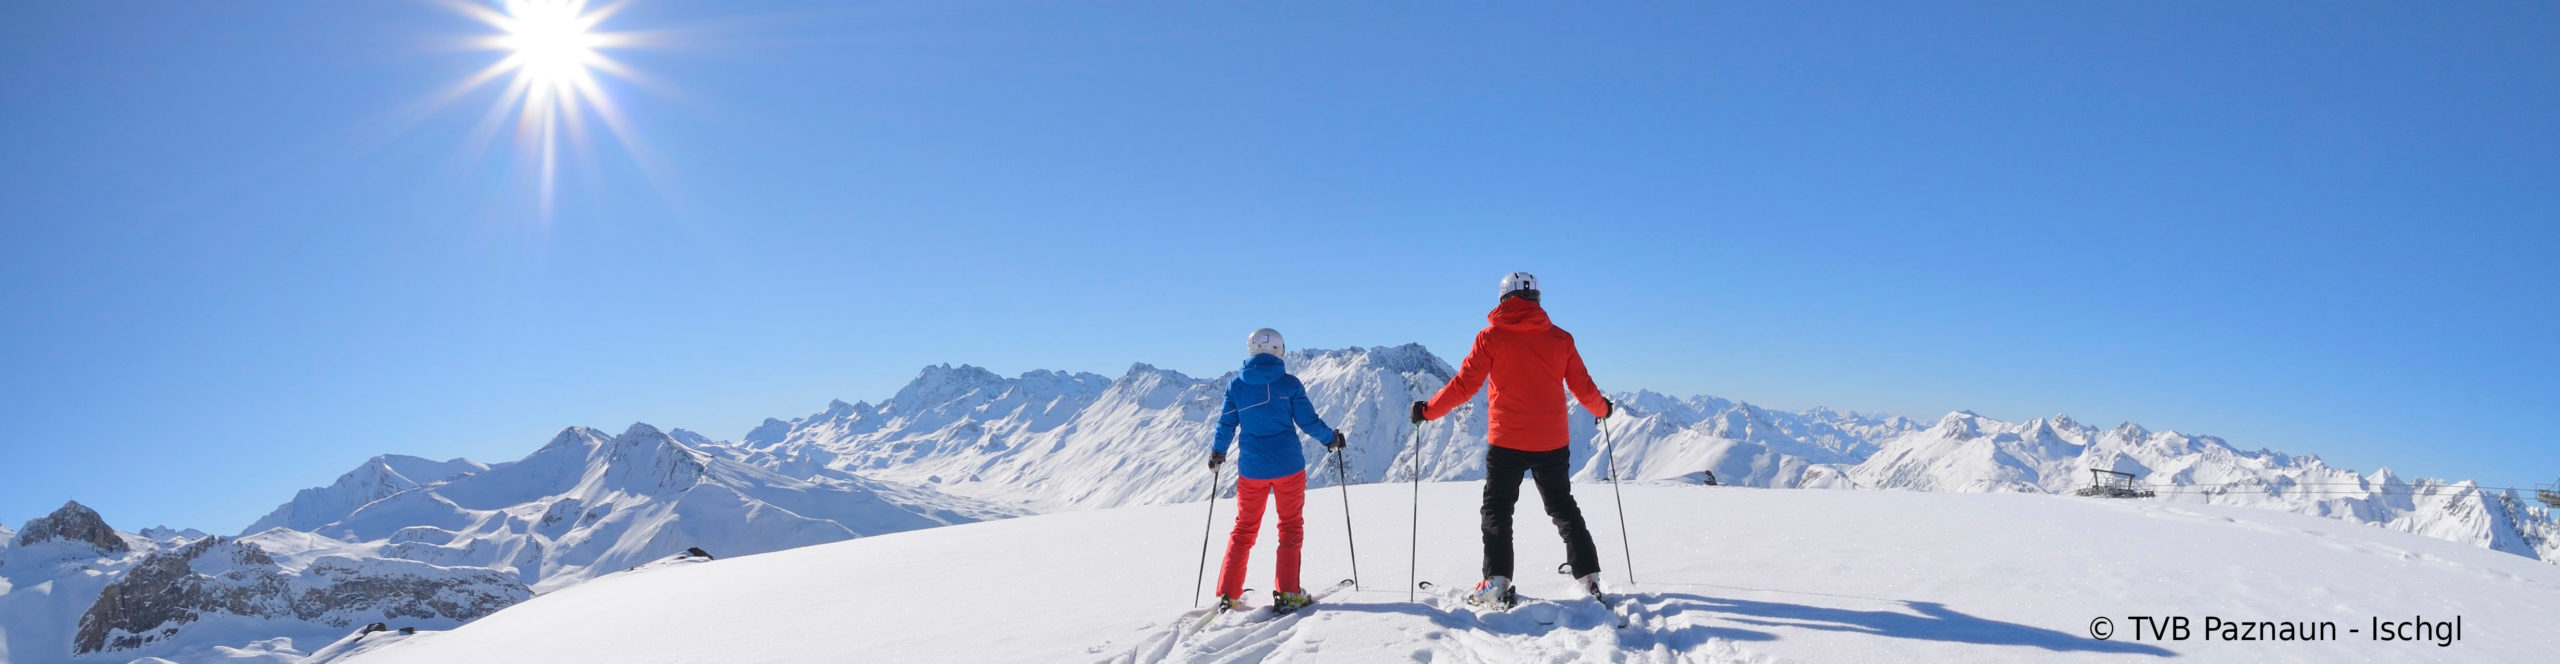 ISCHGL Opening – Skiwochenende – 4 Sterne WellnessHotel mit Schwimmbad – ab Freitag Nachmittag 